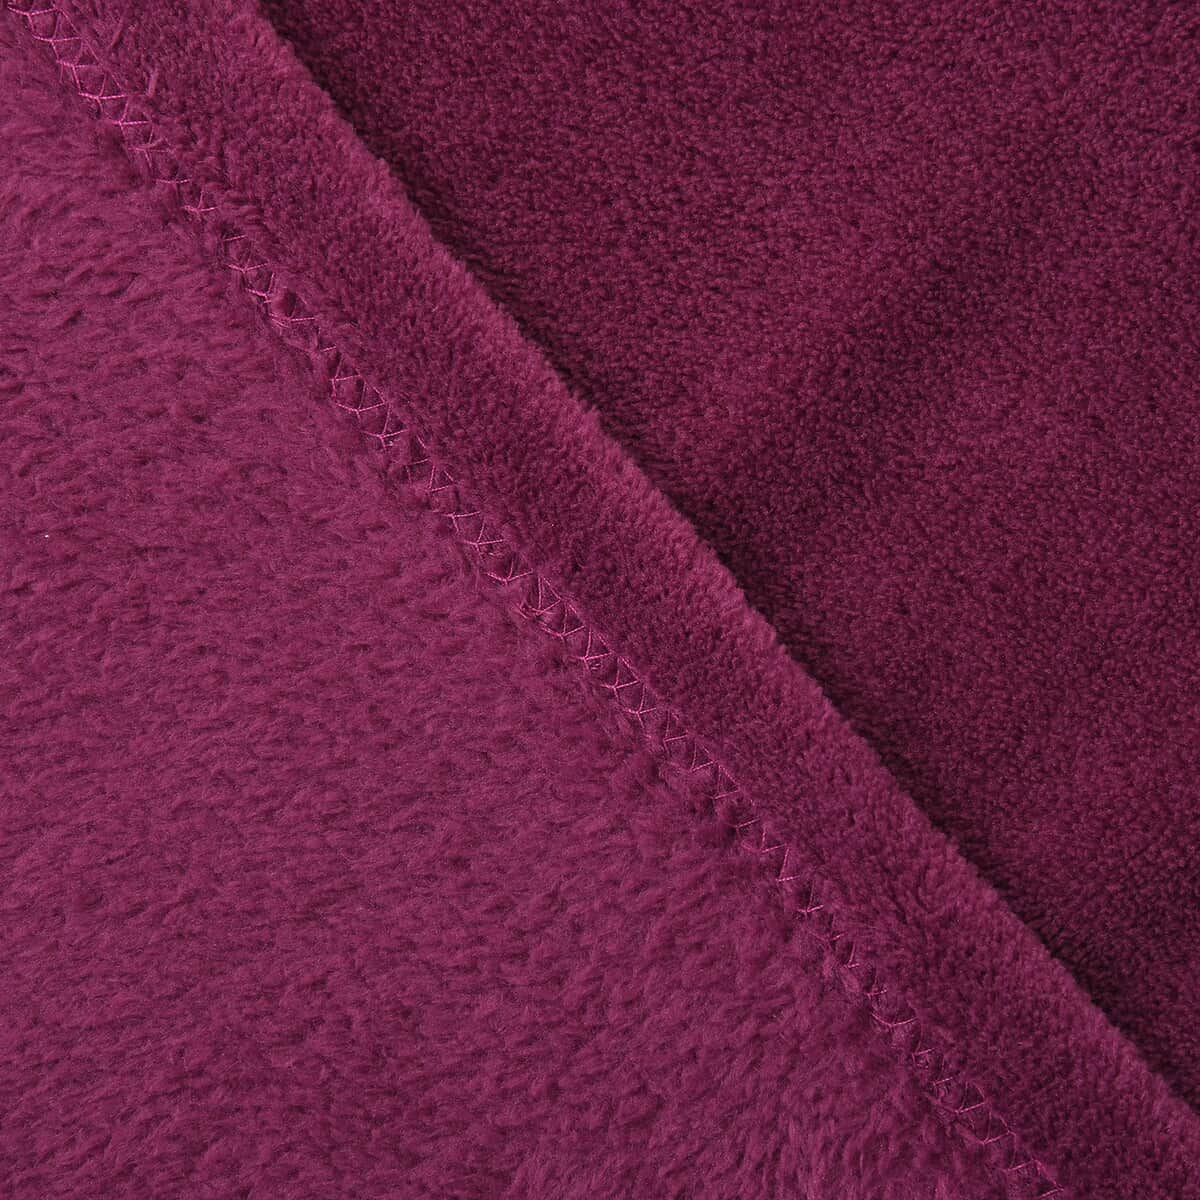 Homesmart Magenta Solid Super Soft and Warm Coral Fleece Blanket image number 1